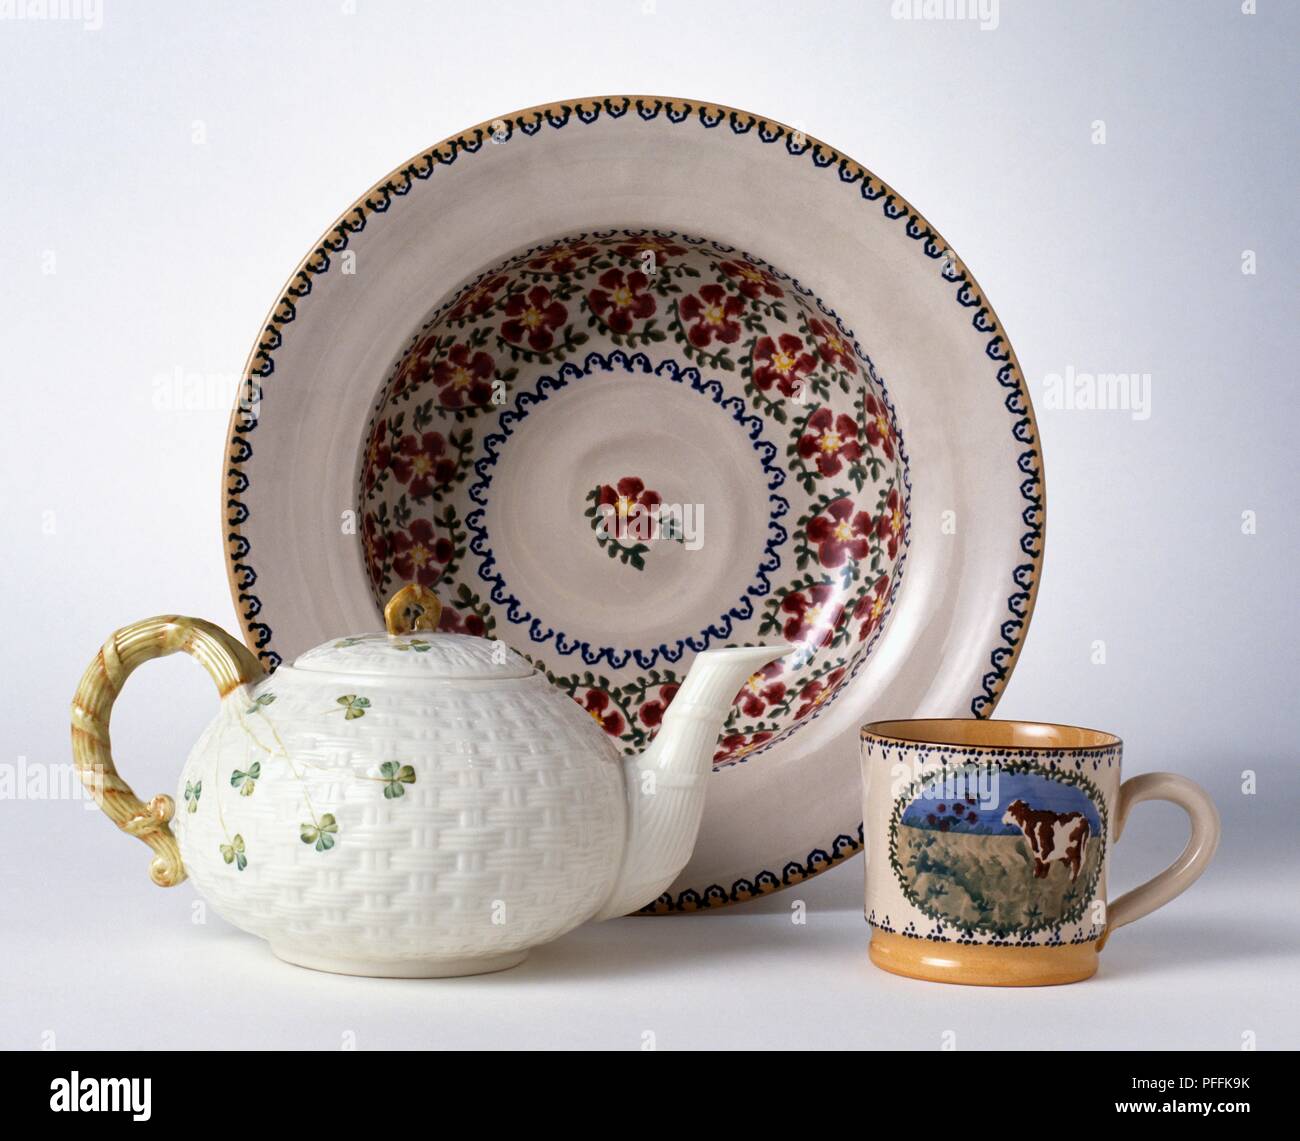 Irish ceramic teapot, mug and plate Stock Photo